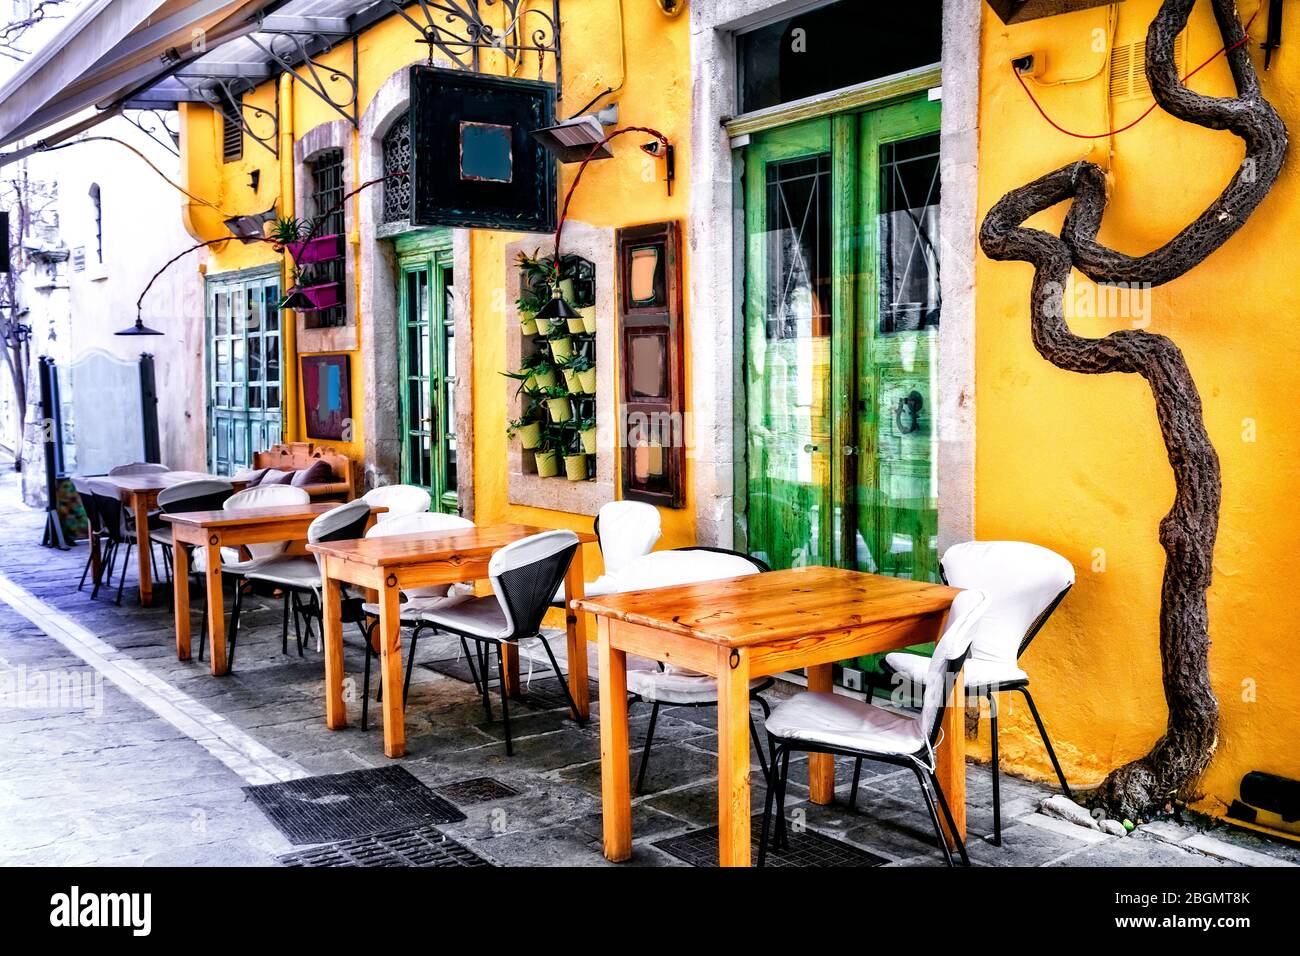 Colorata serie tradizionale greca - piccoli ristoranti (taverne) nella città vecchia di Rethymno, l'isola di Creta Foto Stock